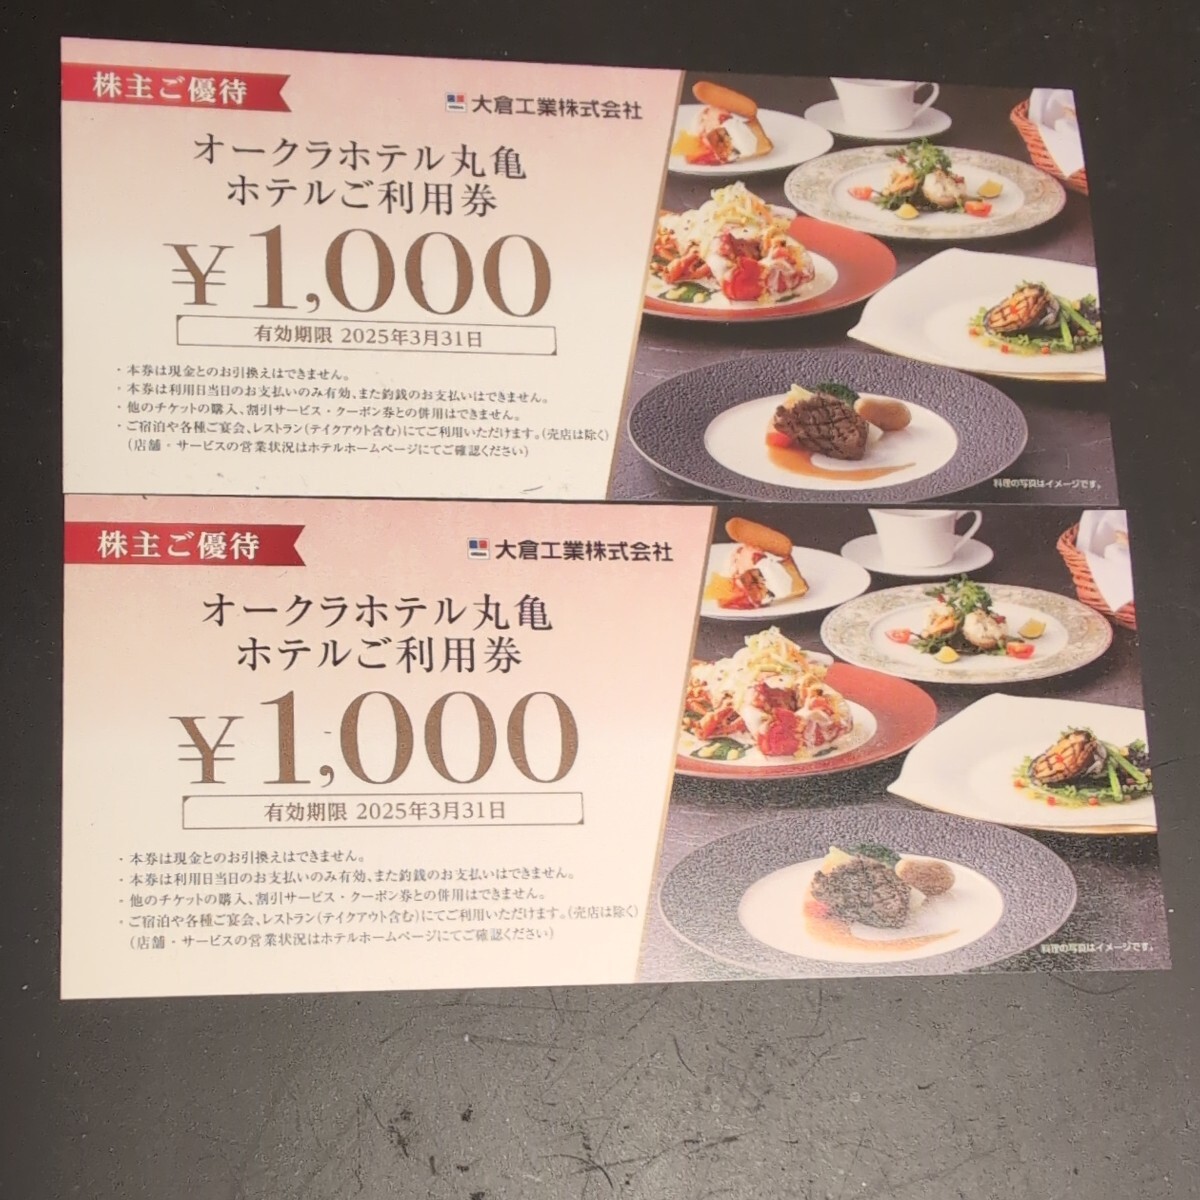  okura отель круг черепаха отель использование талон 2 листов акционер пригласительный билет 